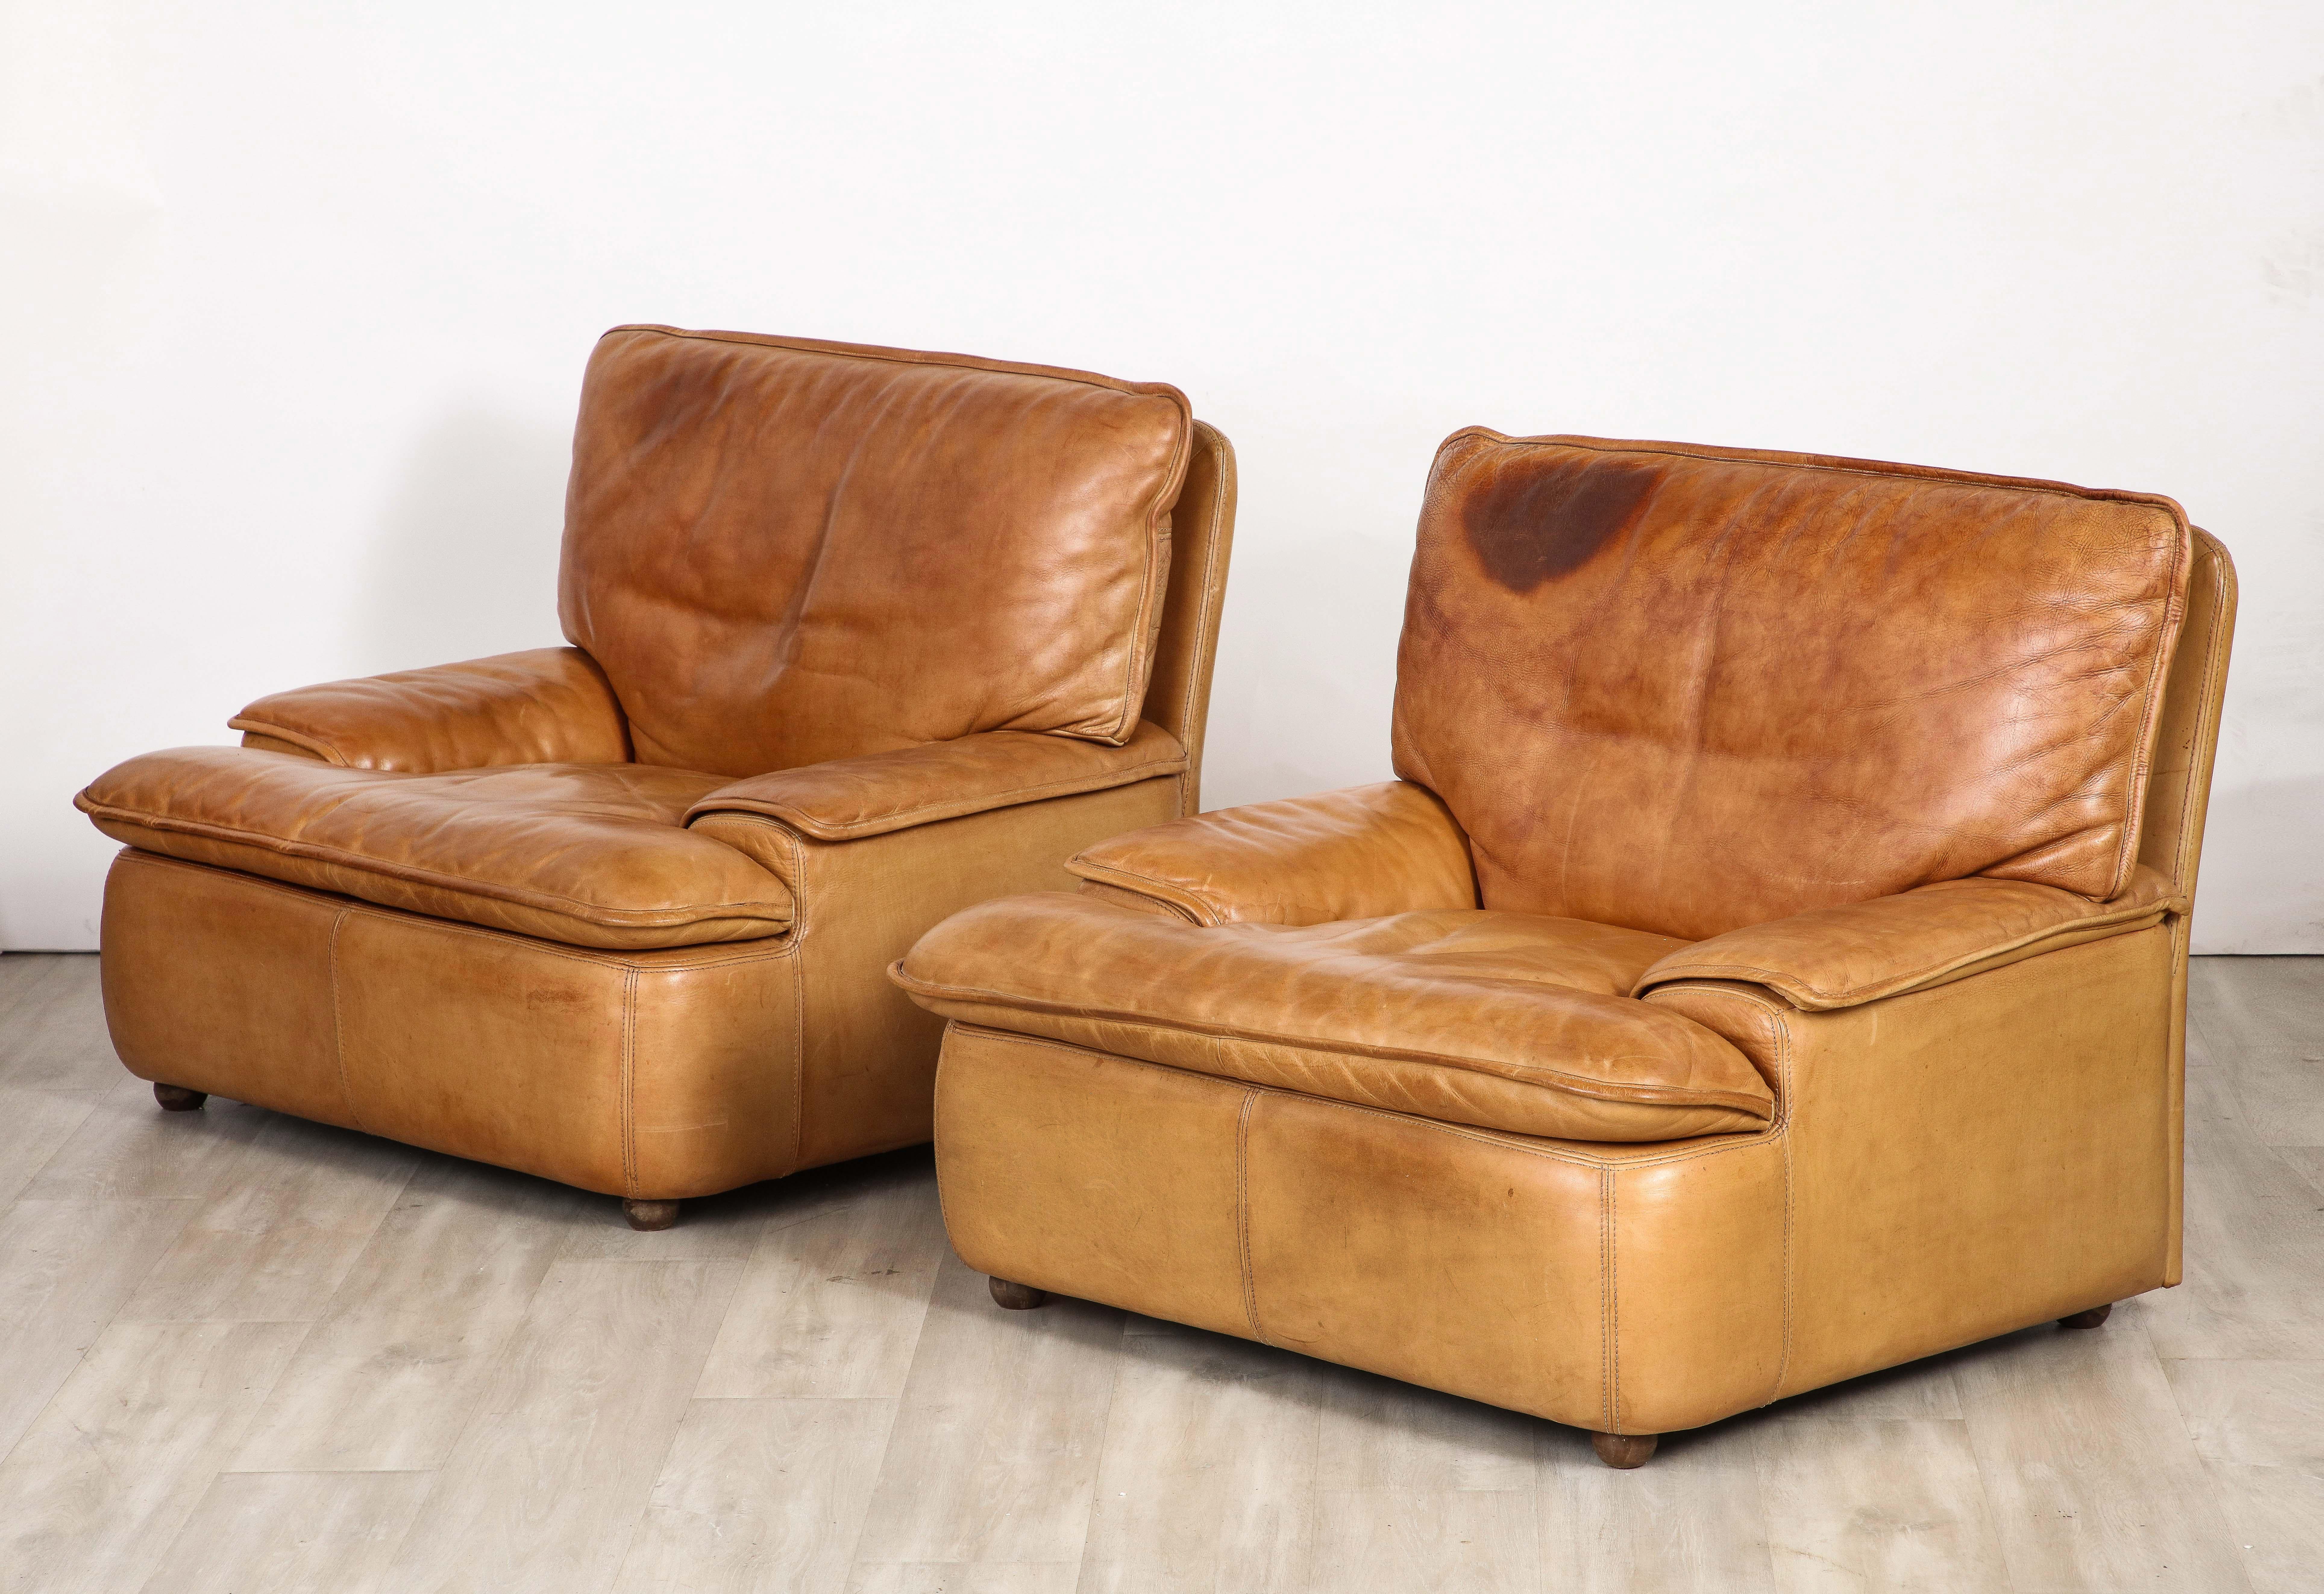 Une paire de chaises de salon en cuir belge, aux proportions fantastiques et à l'échelle grandiose.  Les sièges, les accoudoirs et le dossier sont maintenus en place à l'aide de bandes velcro pour garantir un design visuel minimaliste et homogène. 